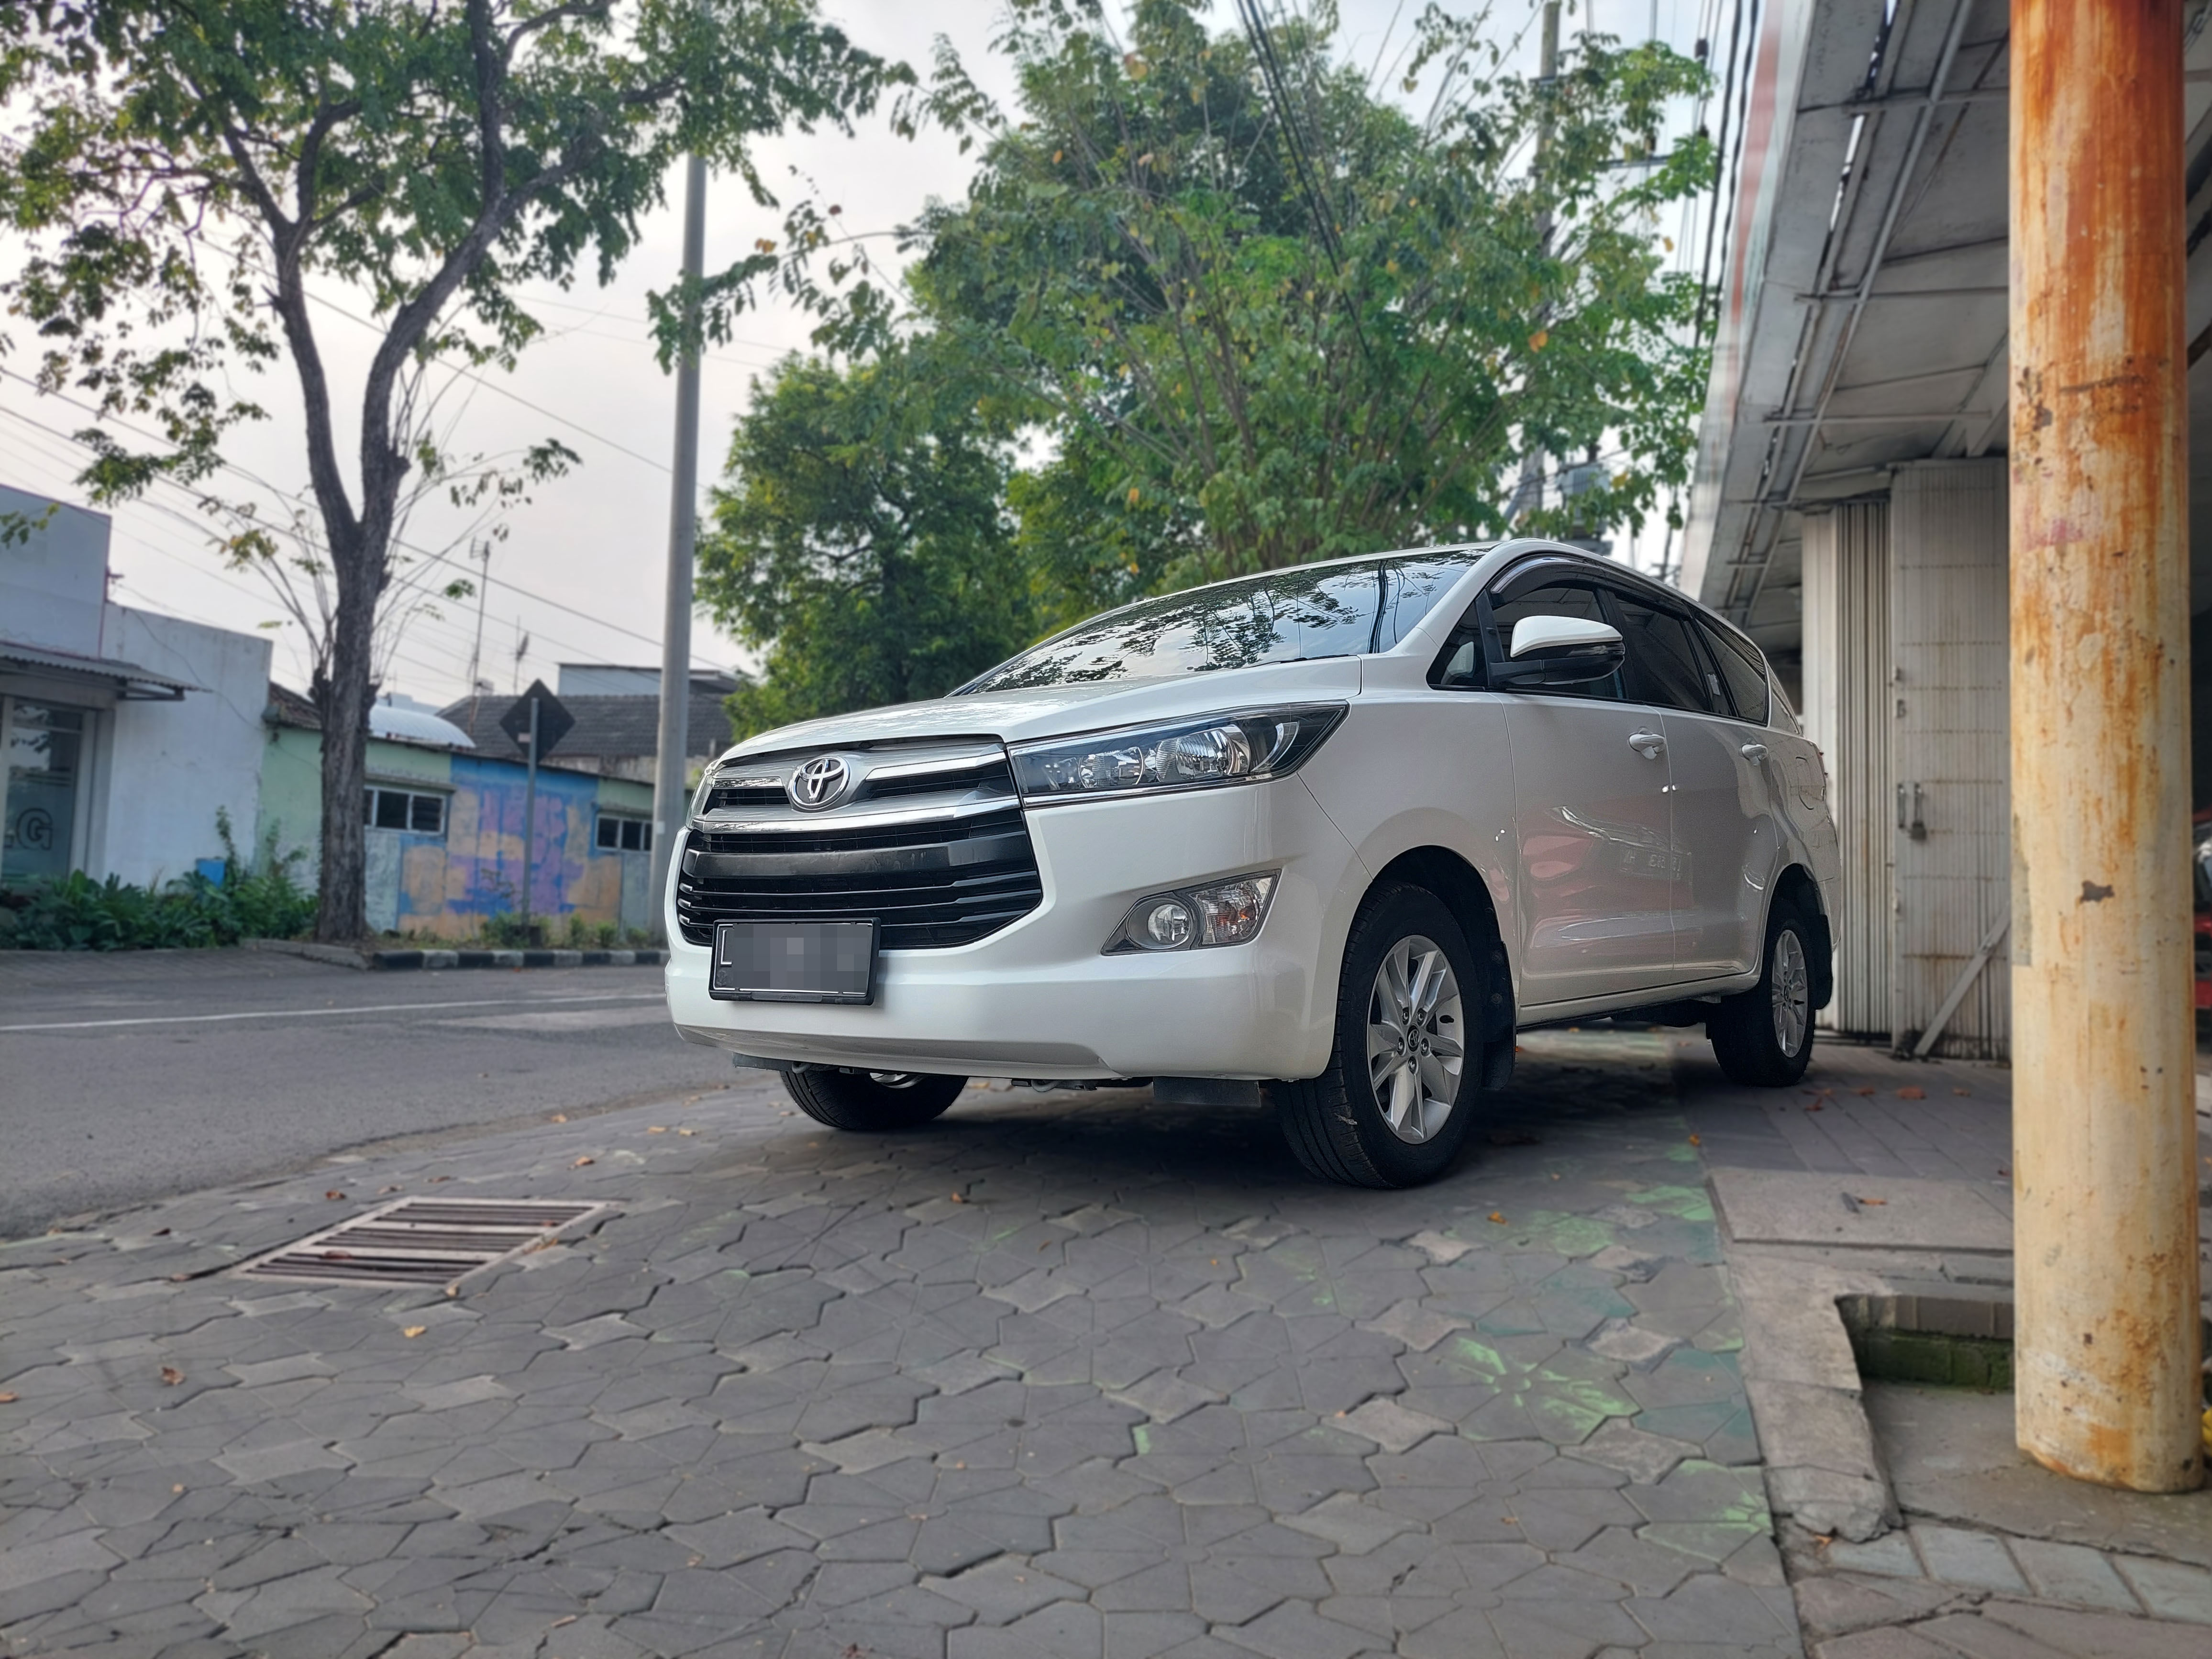 2018 Toyota Kijang Innova G A/T Diesel